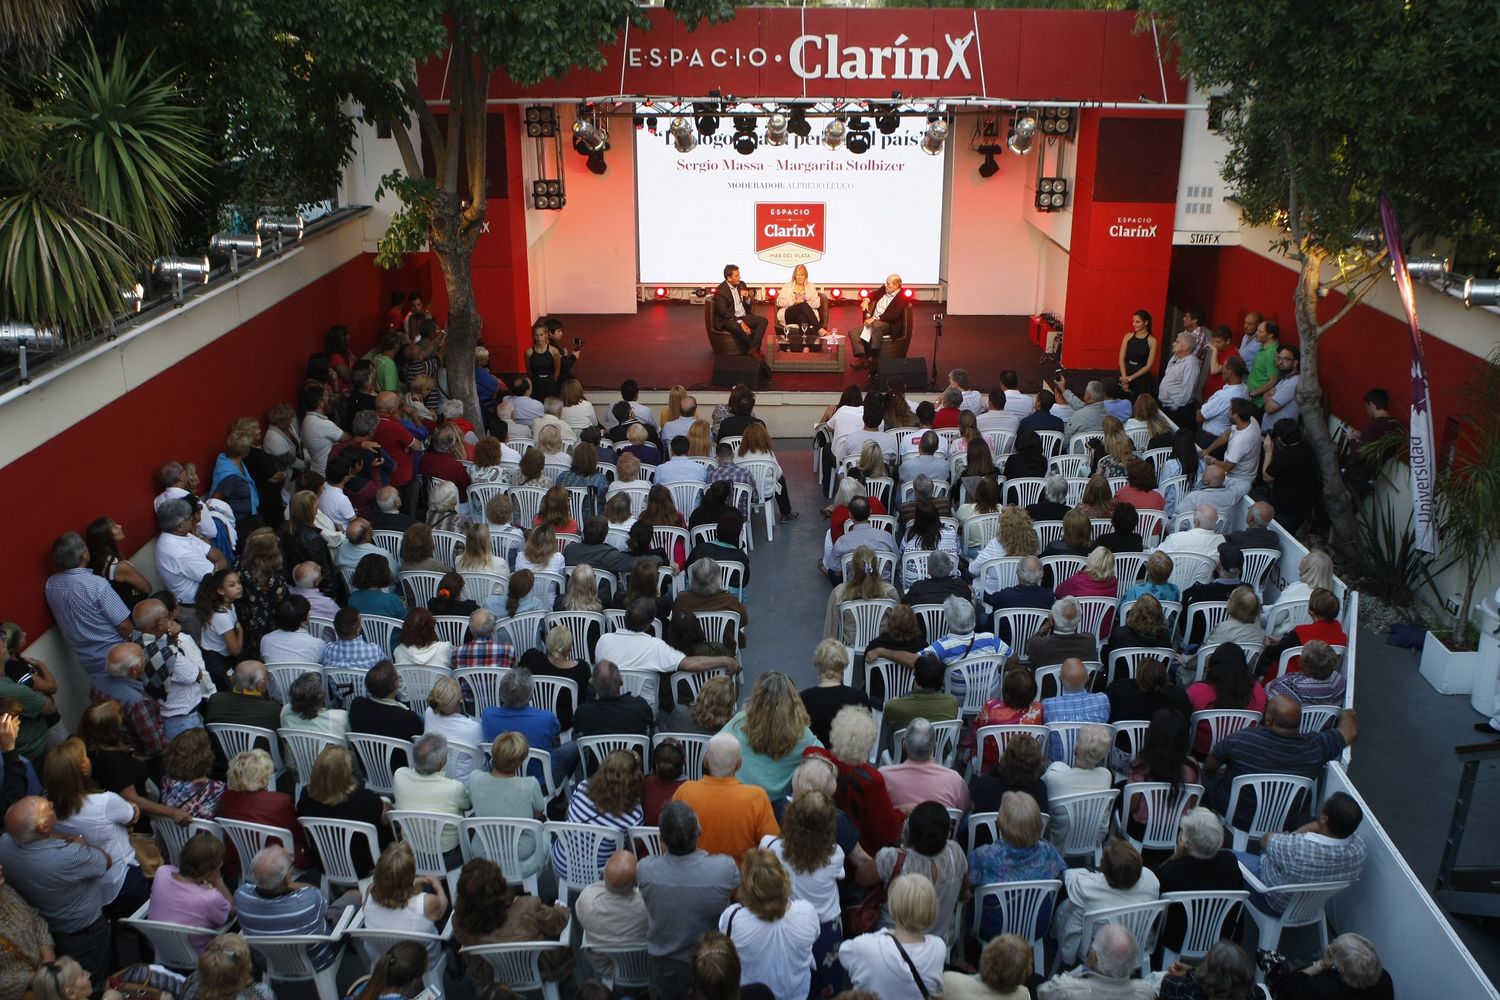 “Diálogos para pensar el país” y shows de Córdoba en Espacio Clarín